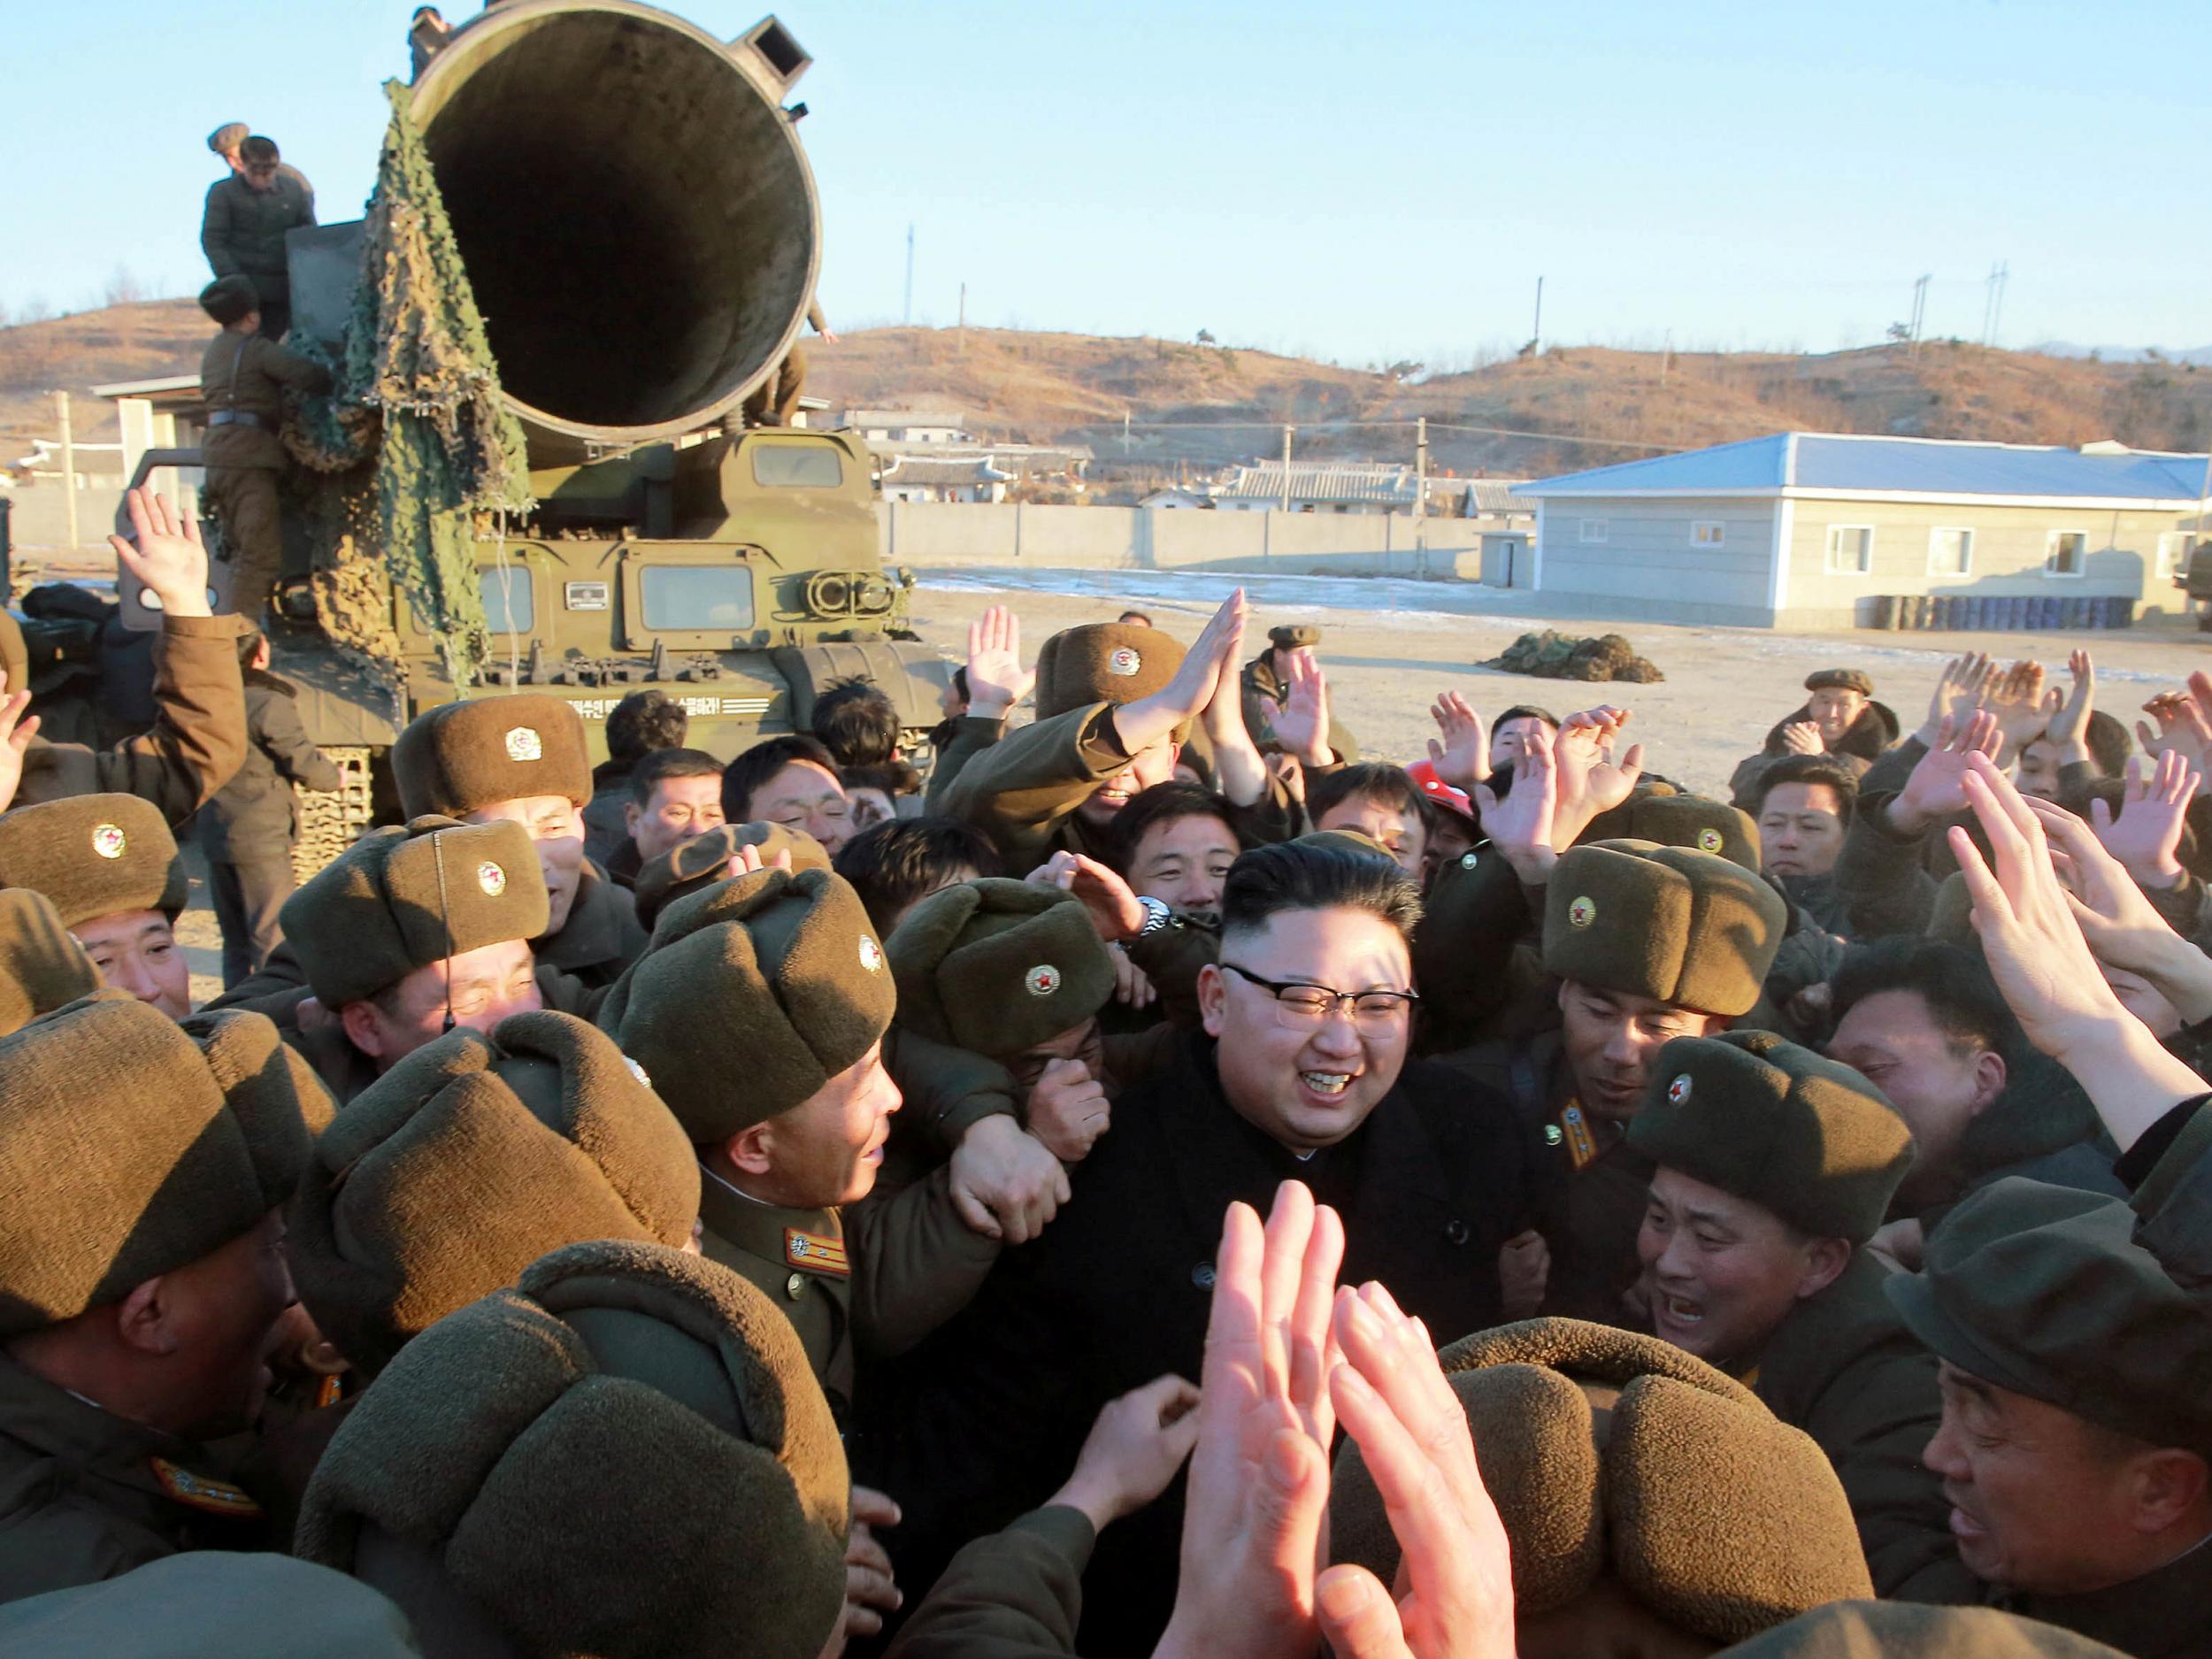 North Korean leader Kim Jong-un at a missile test firing